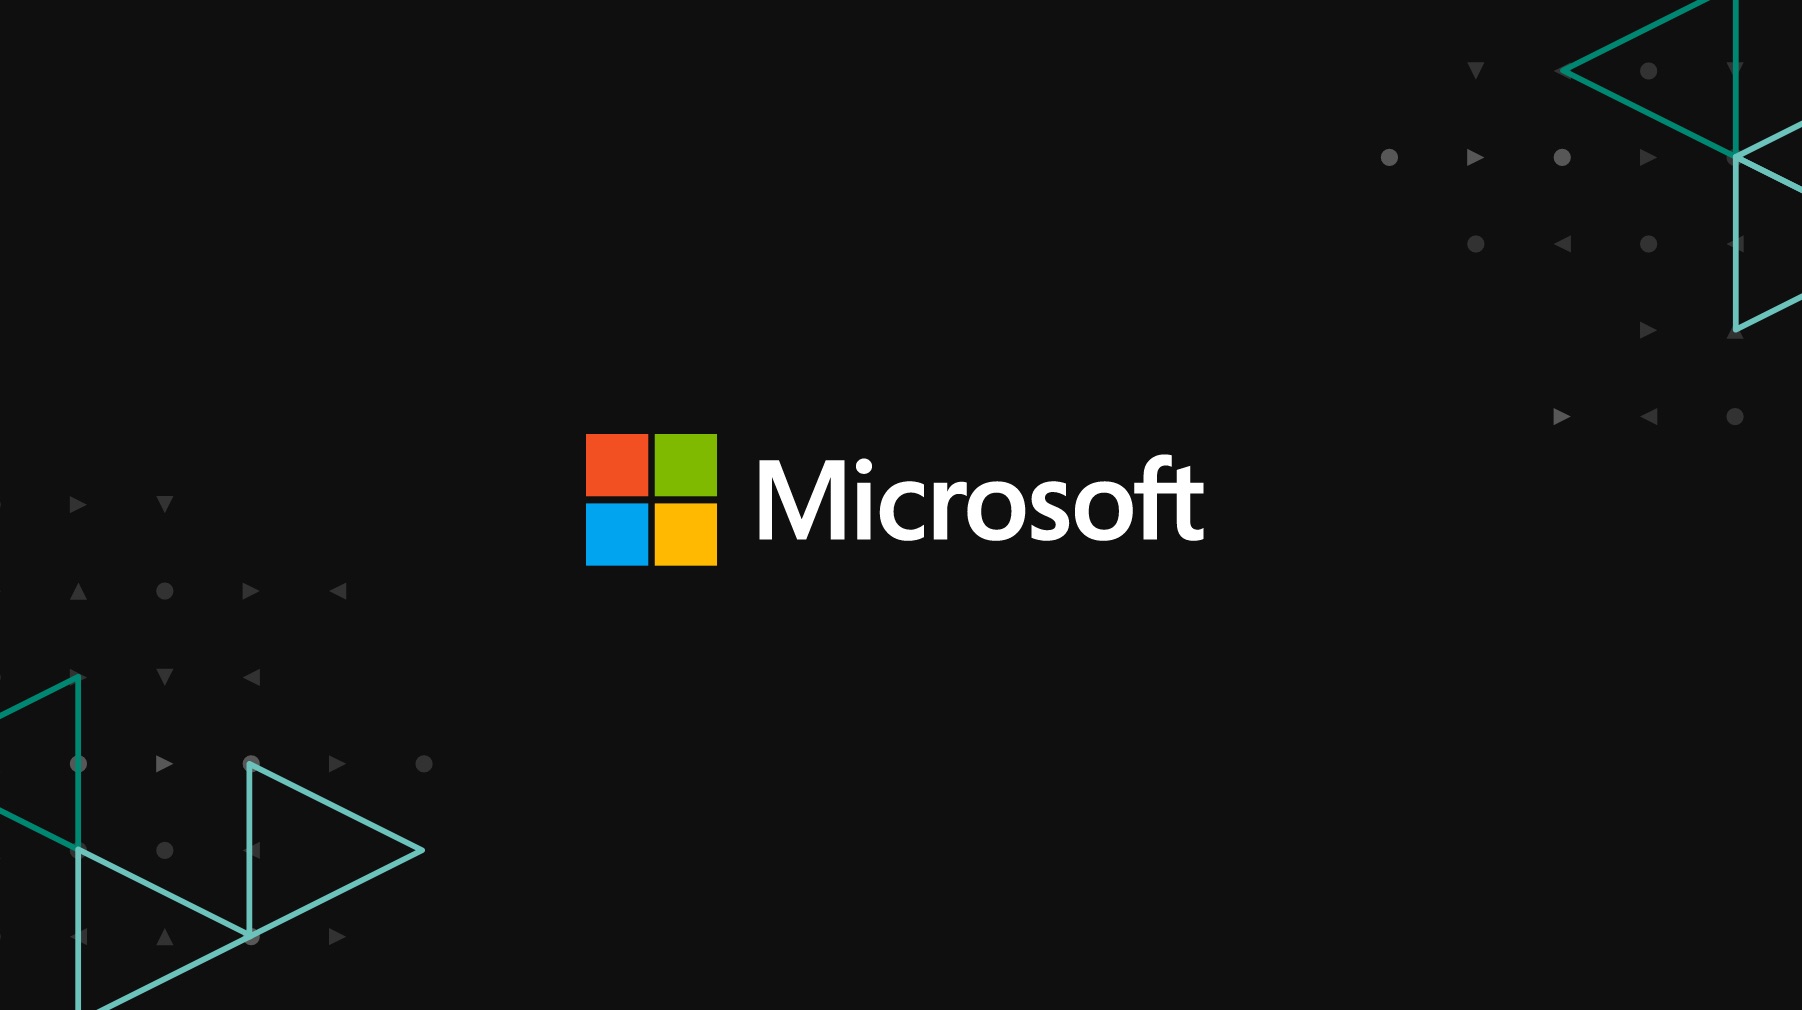 Microsoft: Việt Nam vẫn là nước trong top gặp nhiều rủi ro trên không gian  mạng, tuy nhiên vị thế không còn cao như những năm trước